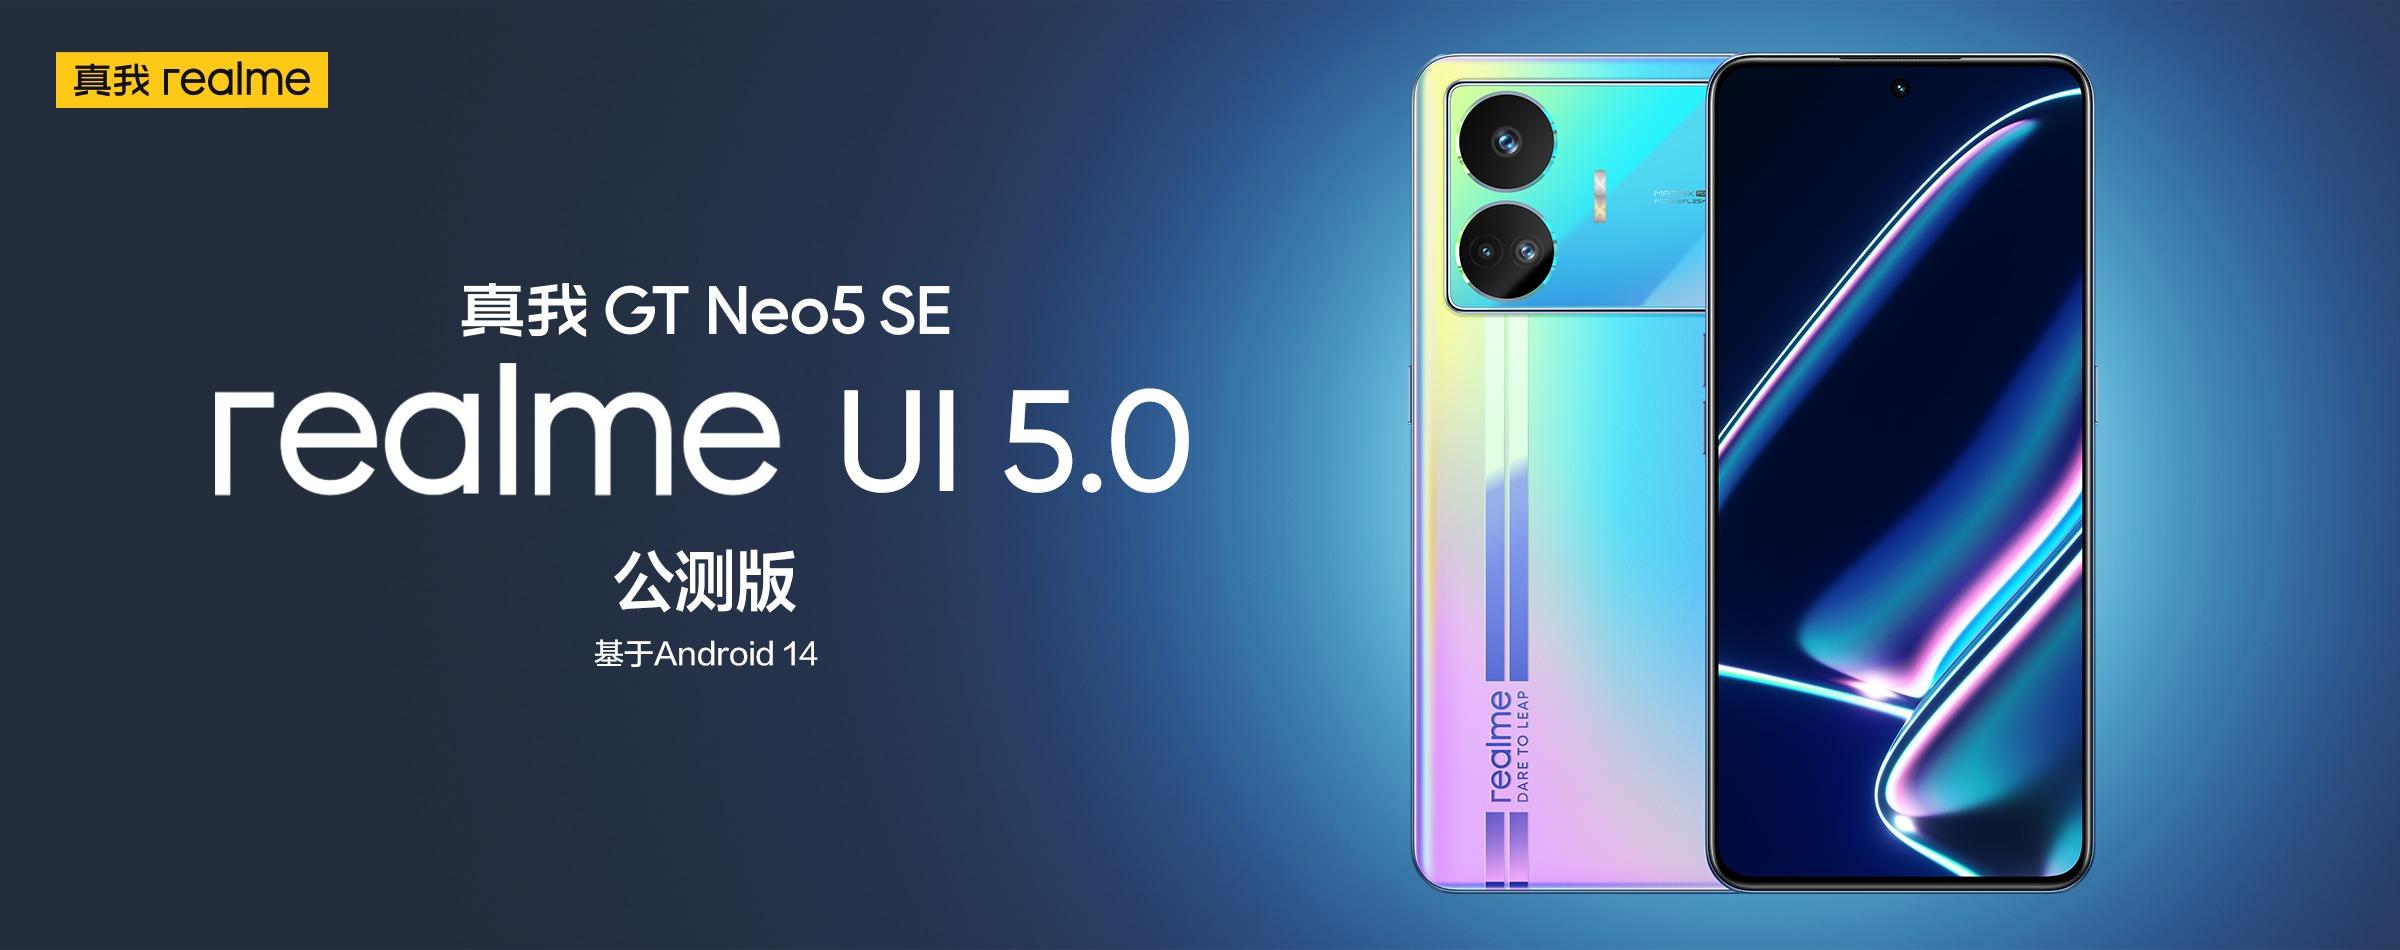 Realme GT Neo 5 SE har fått en betaversion av realme UI 5.0 baserad på Android 14